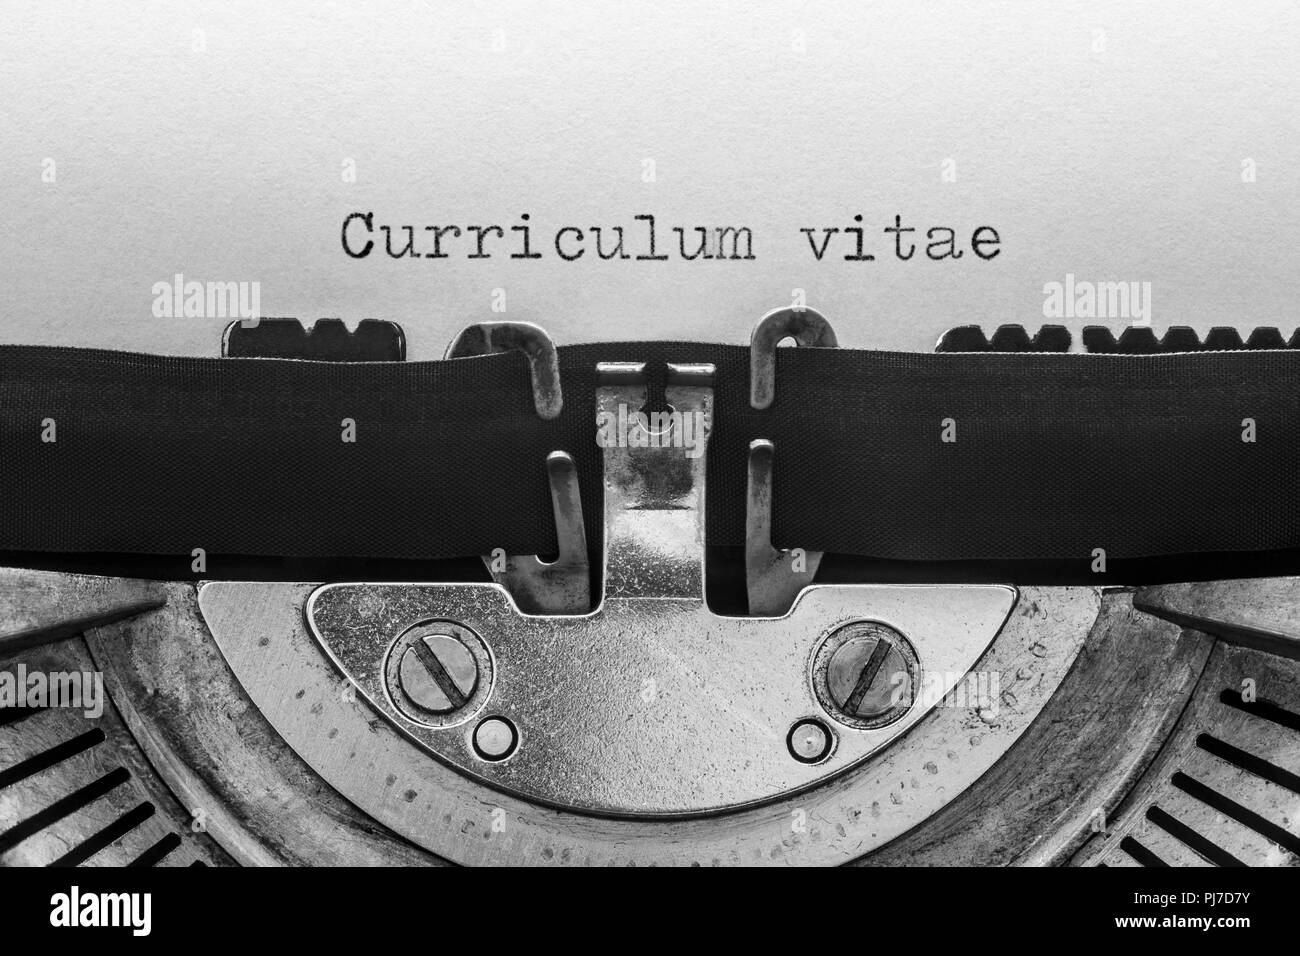 Curriculum vitae digitata su una macchina da scrivere vintage Foto Stock